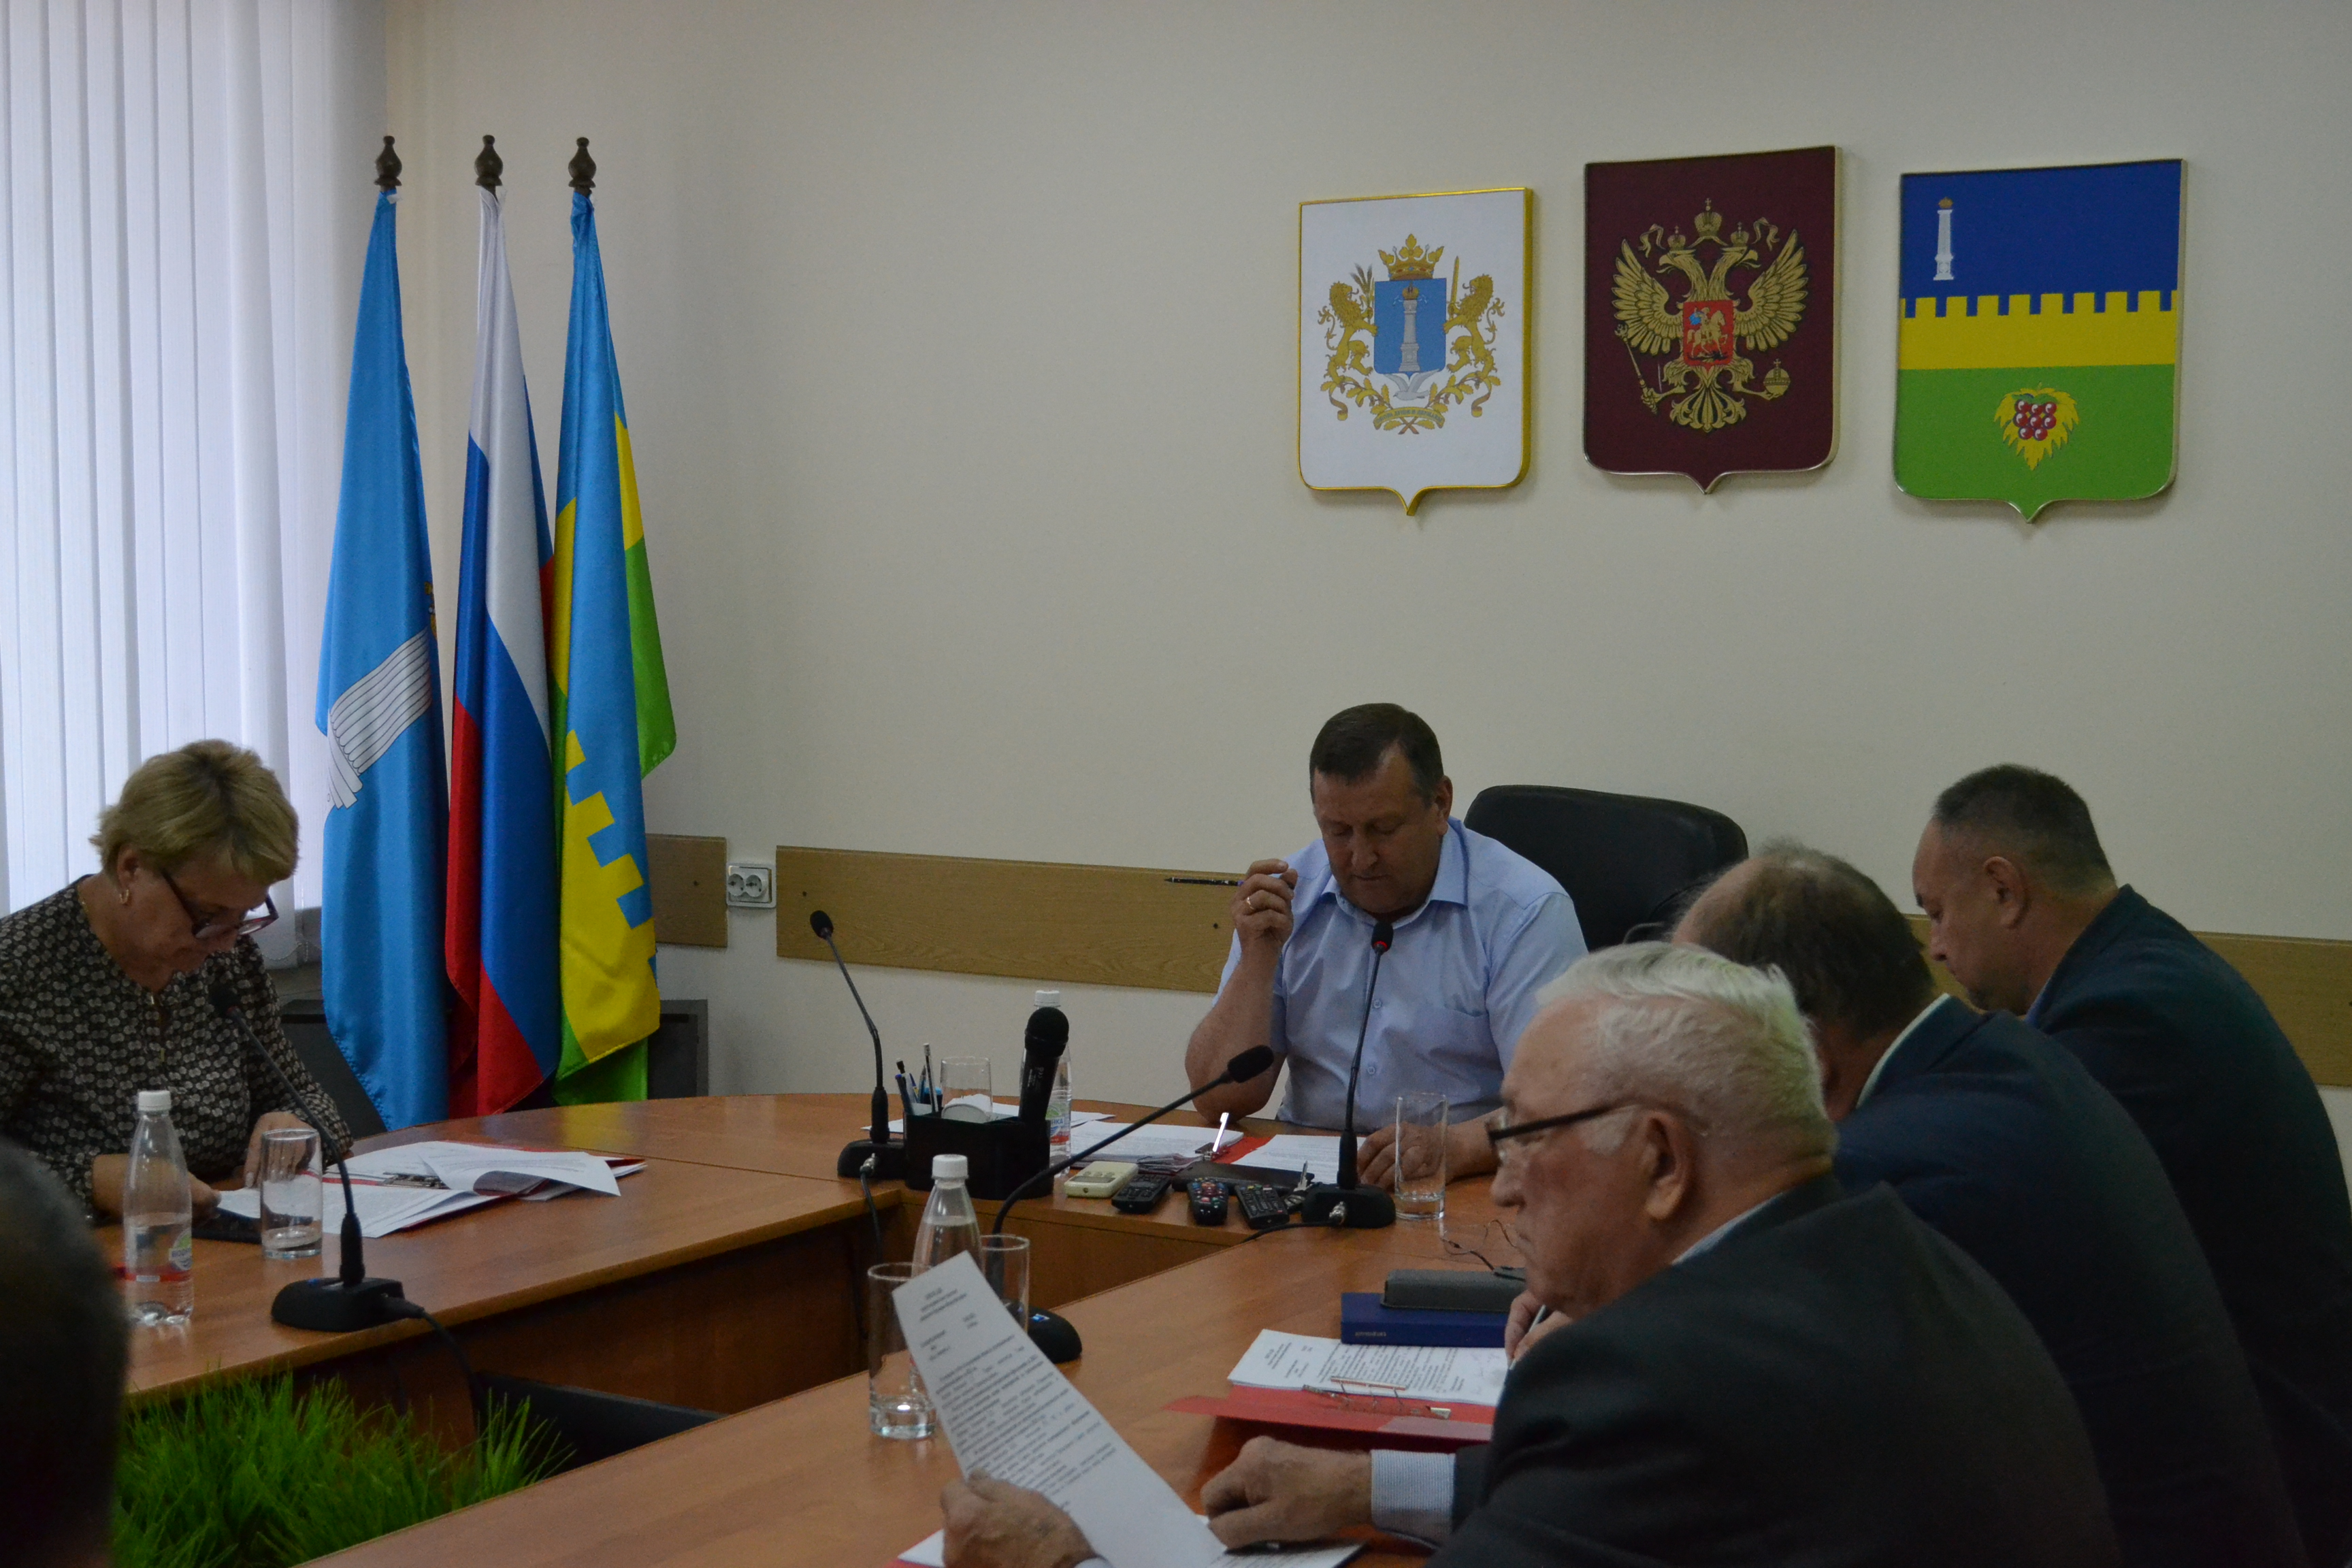 В Администрации прошло очередное заседание районного Совета депутатов.